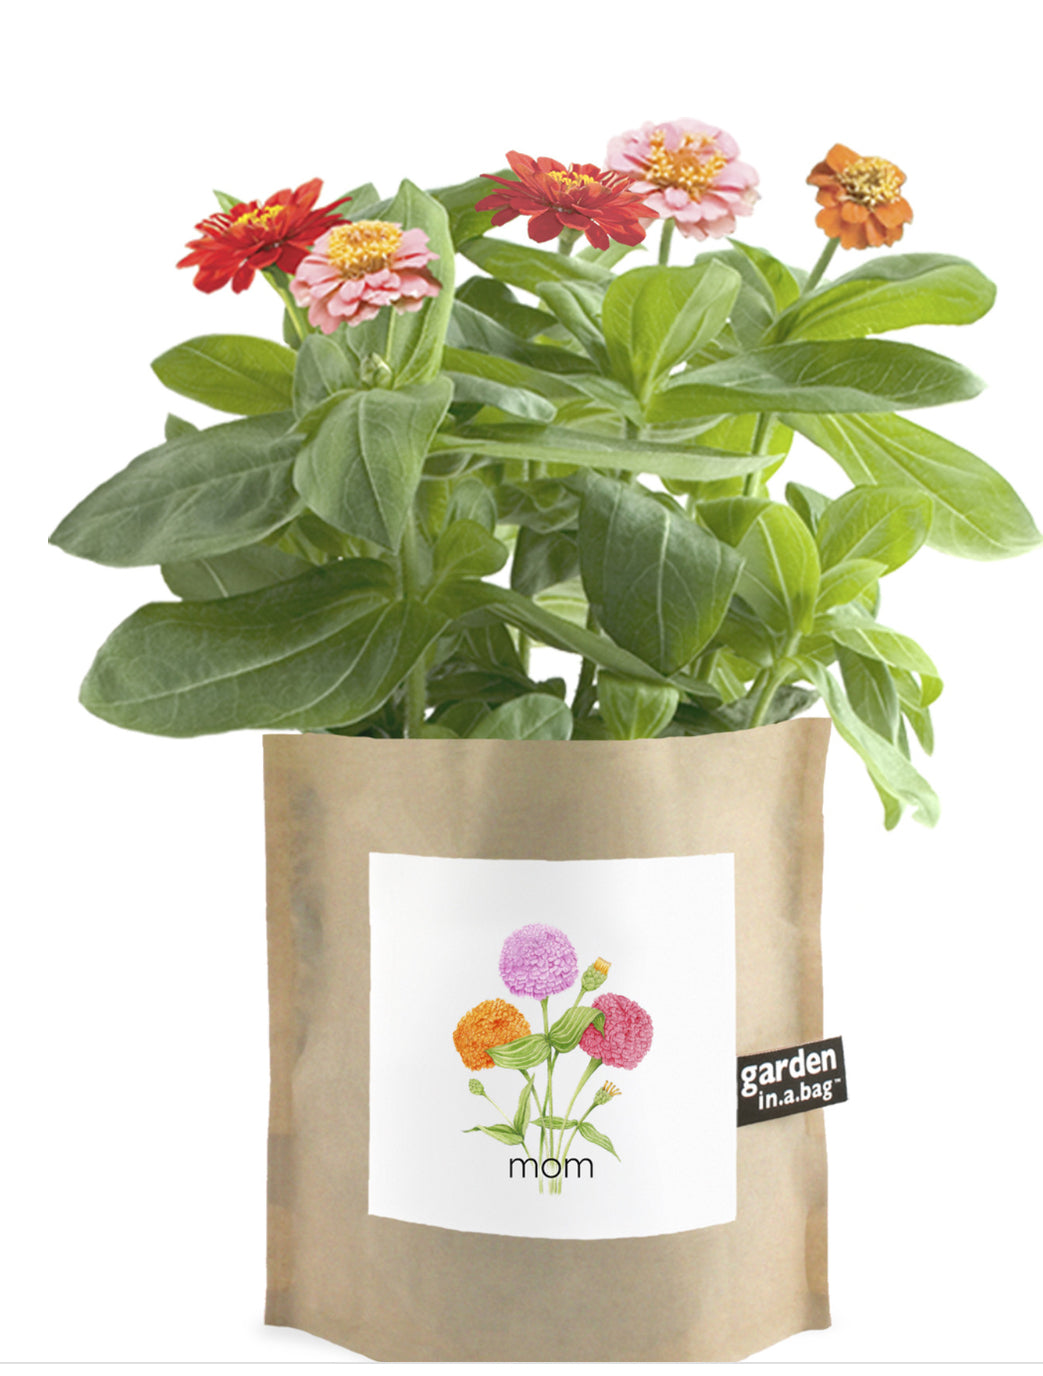 Garden in a bag - zinnia